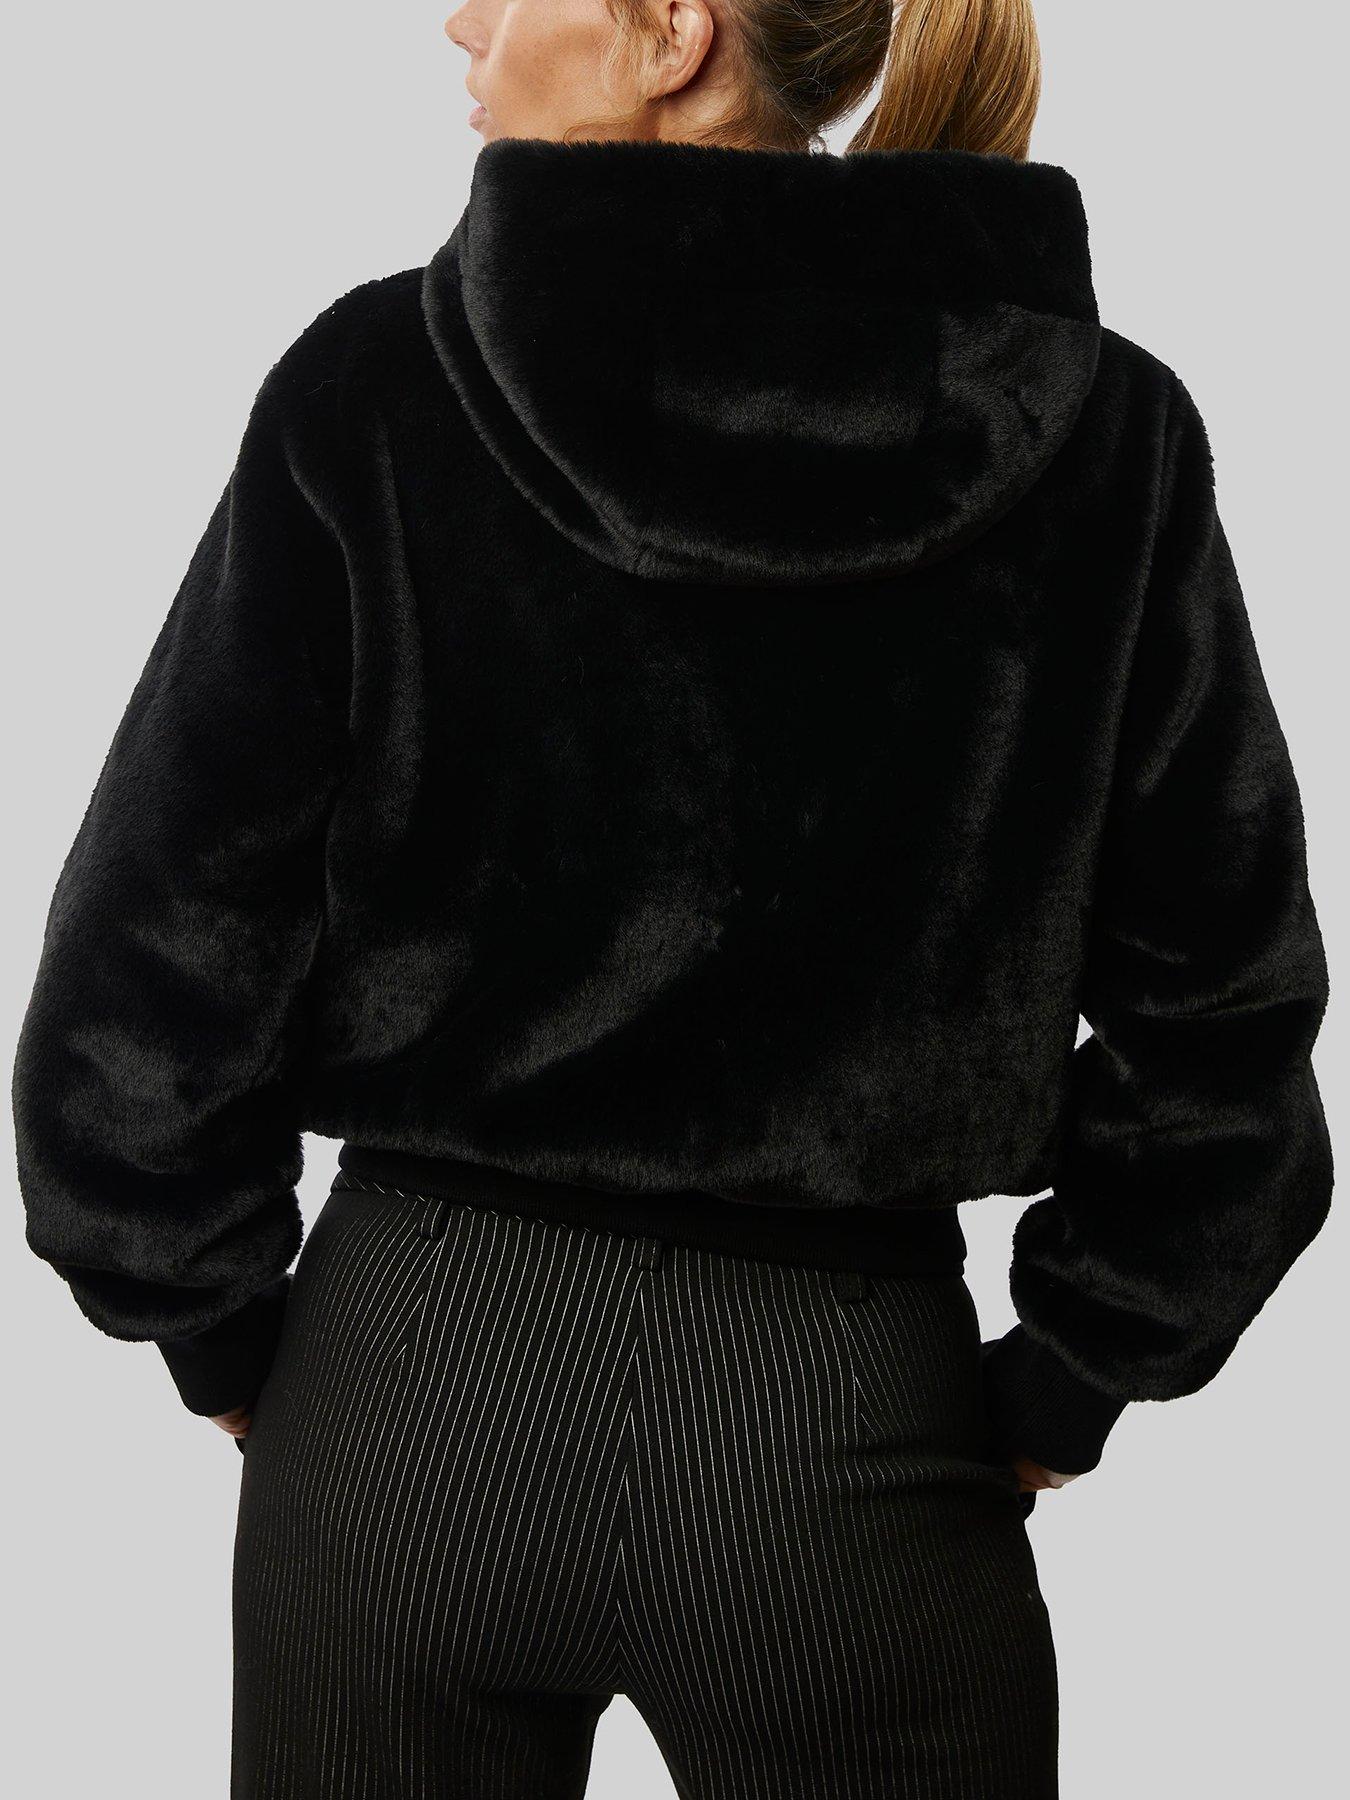 Куртка из искусственного меха с капюшоном James Lakeland, черный толстовка с капюшоном из искусственного меха 18 лет 180 см черный